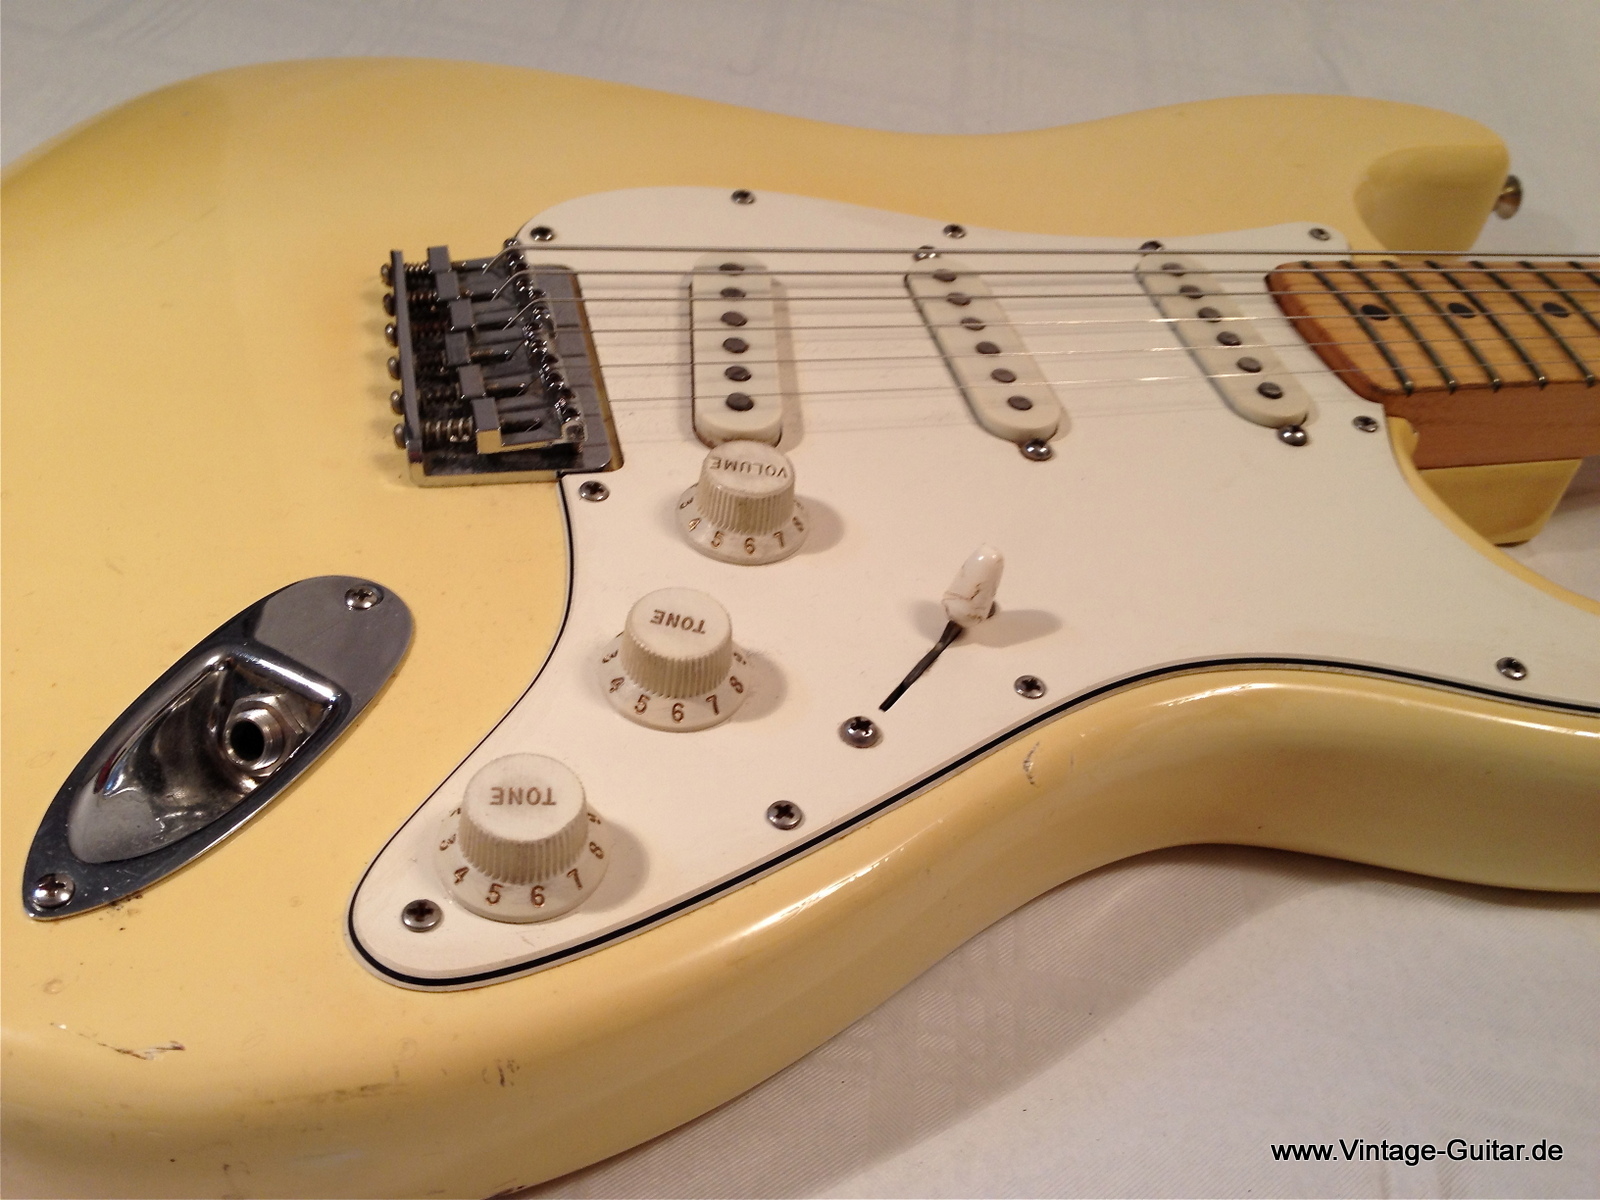 White stratocaster. Fender Stratocaster белый. Stratocaster Olympic White Hardtail. Fender Stratocaster желтая. Vintage Stratocaster Hardtail.